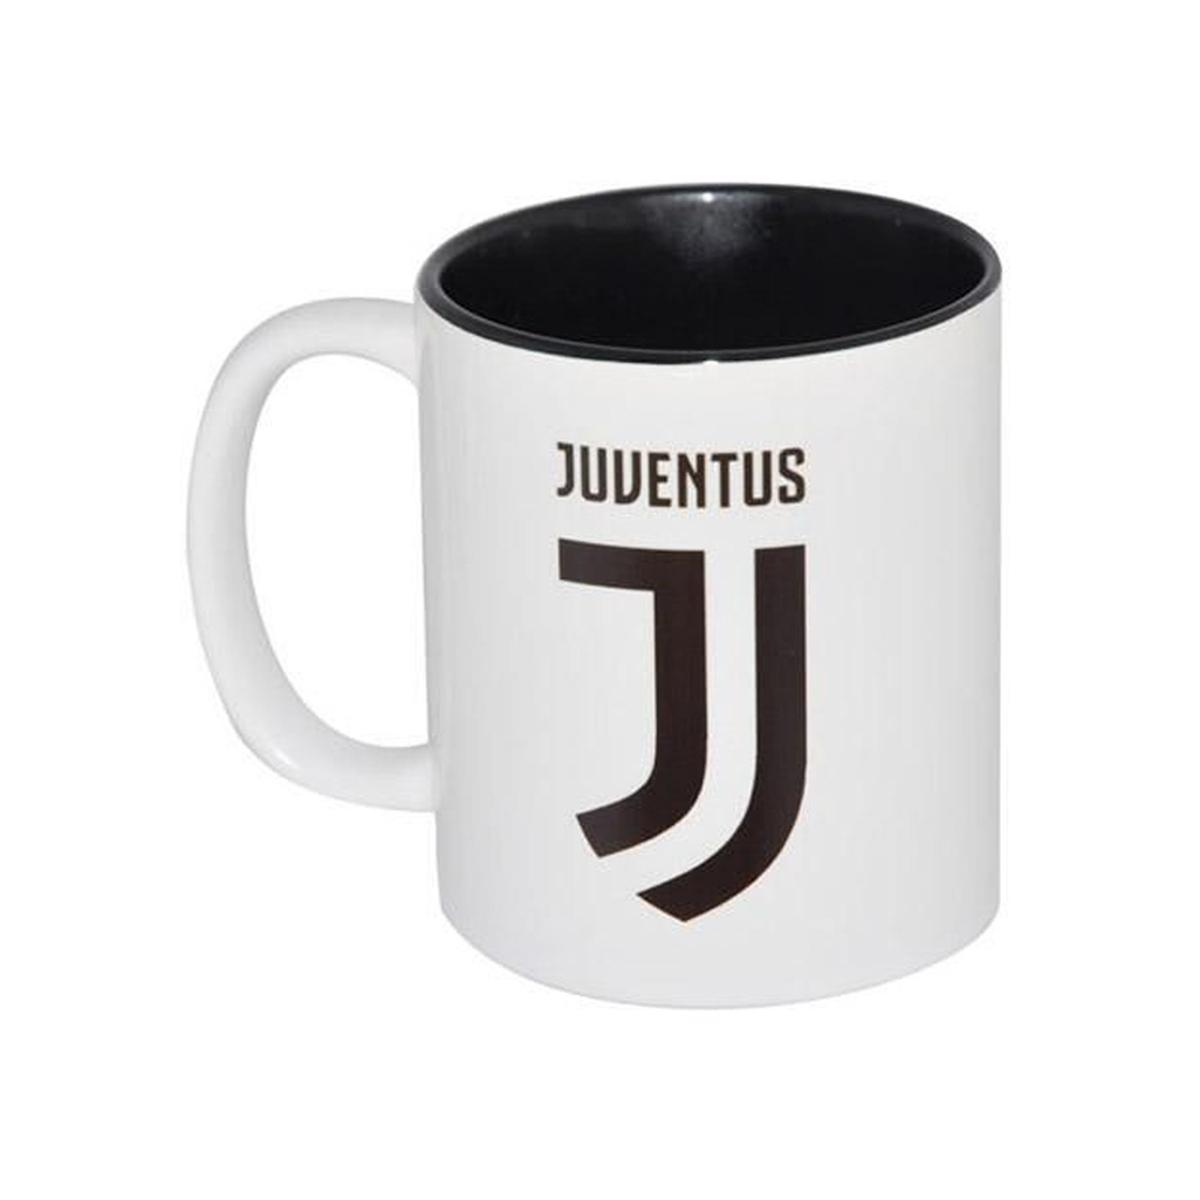 Juventus Tazza juventus 24551 8032755396444